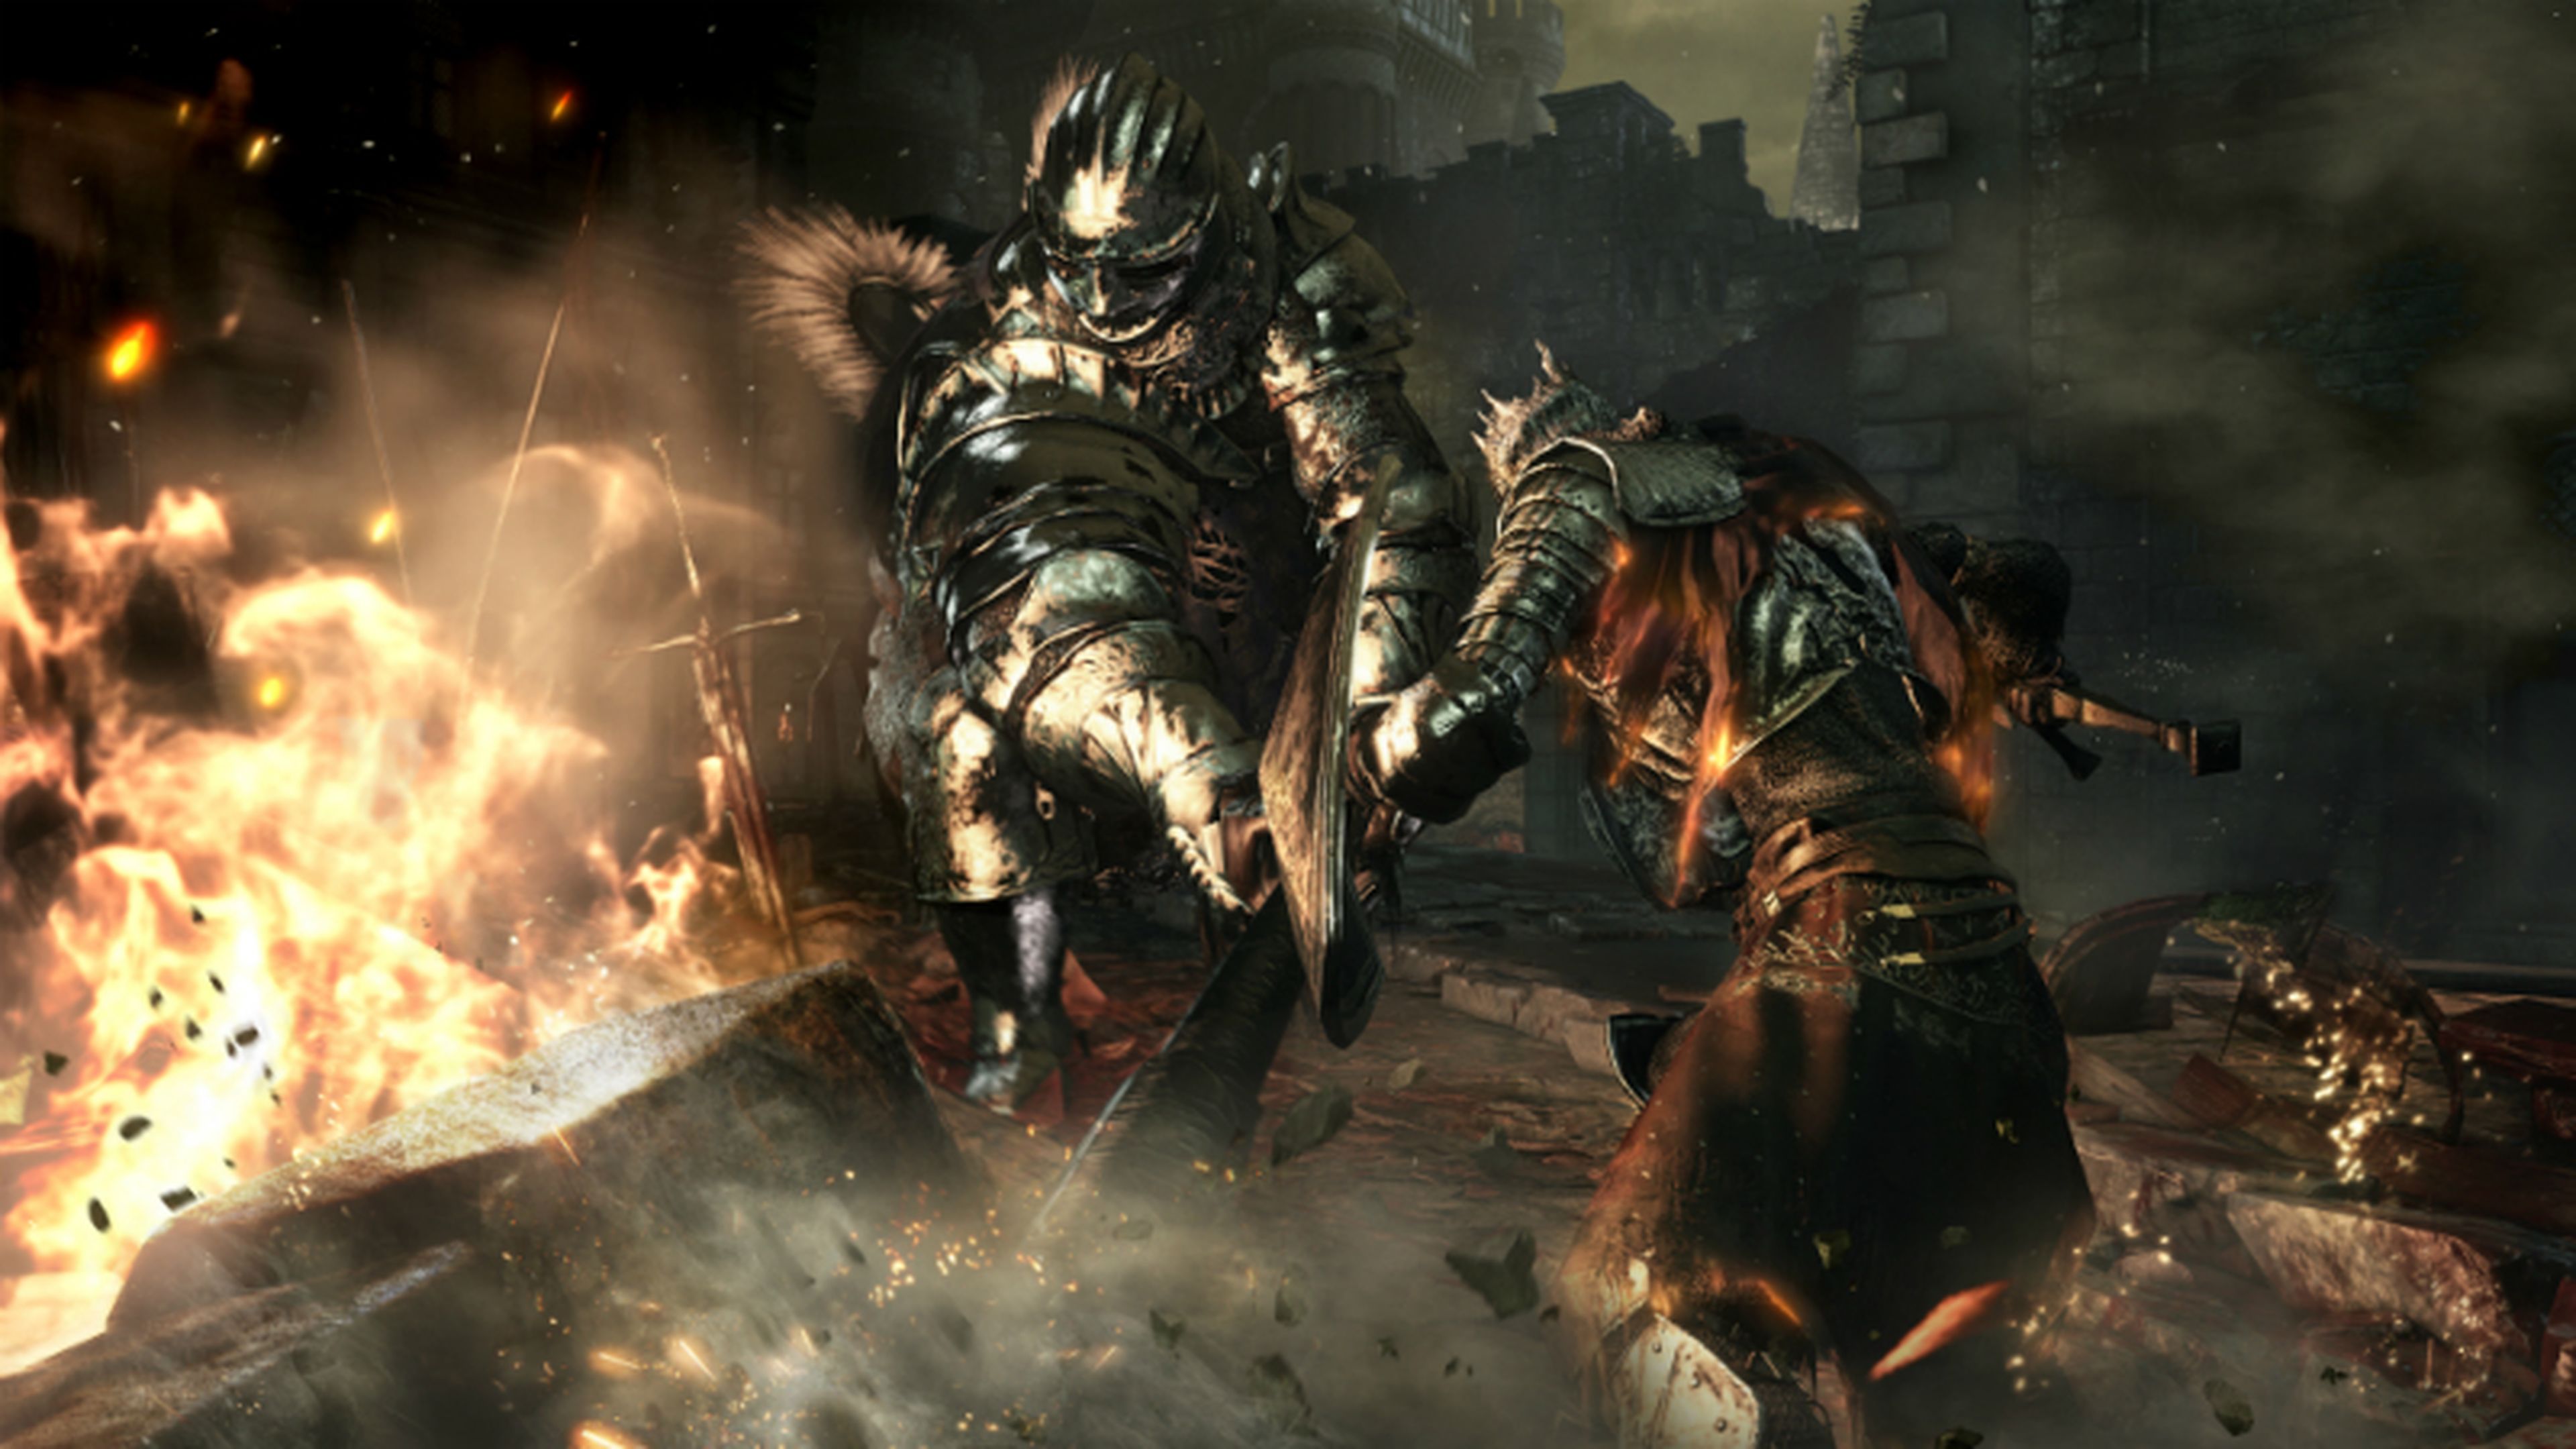 E3 2015: Impresiones de Dark Souls III